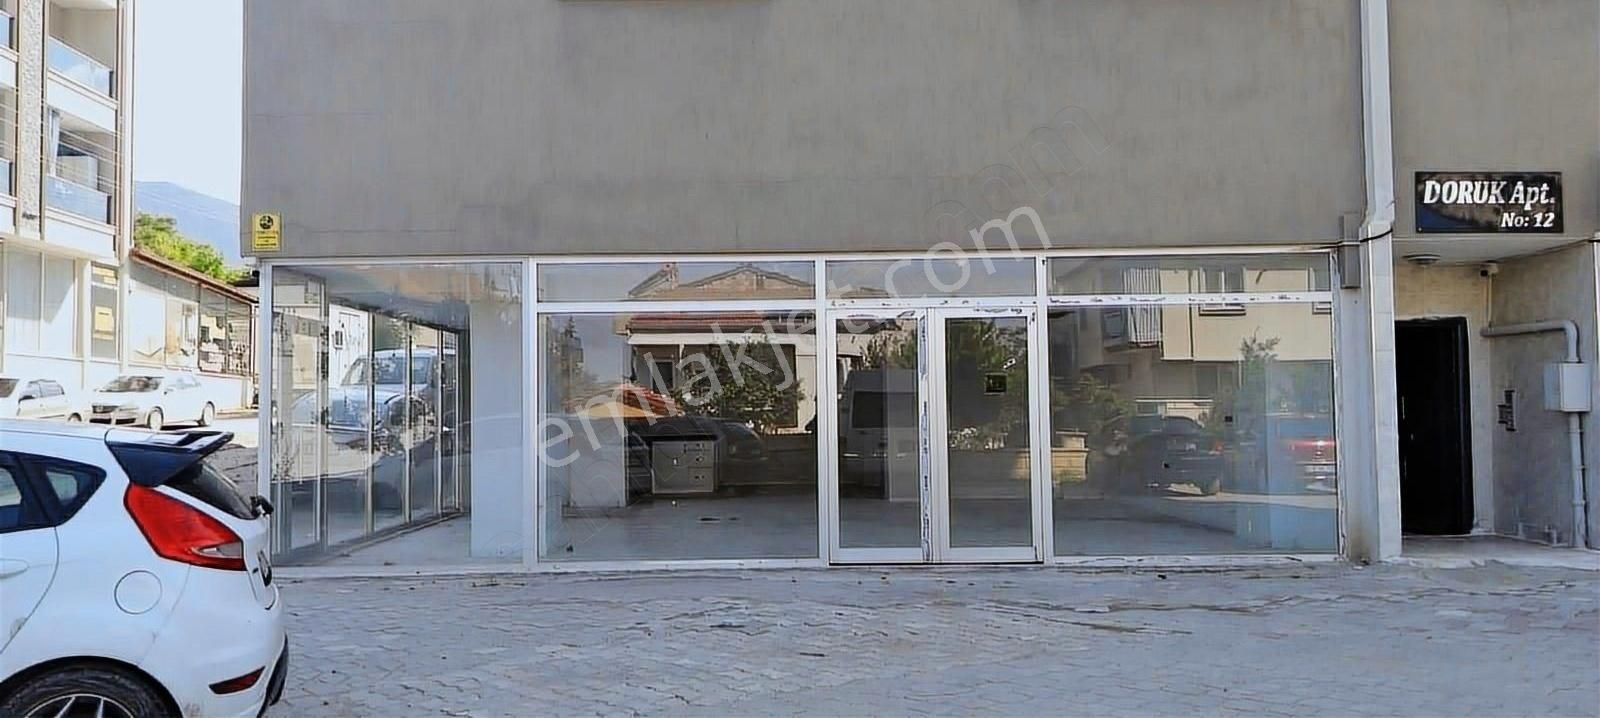 Pamukkale Hürriyet Satılık Dükkan & Mağaza Kayıhan'da Satılık Dükkan